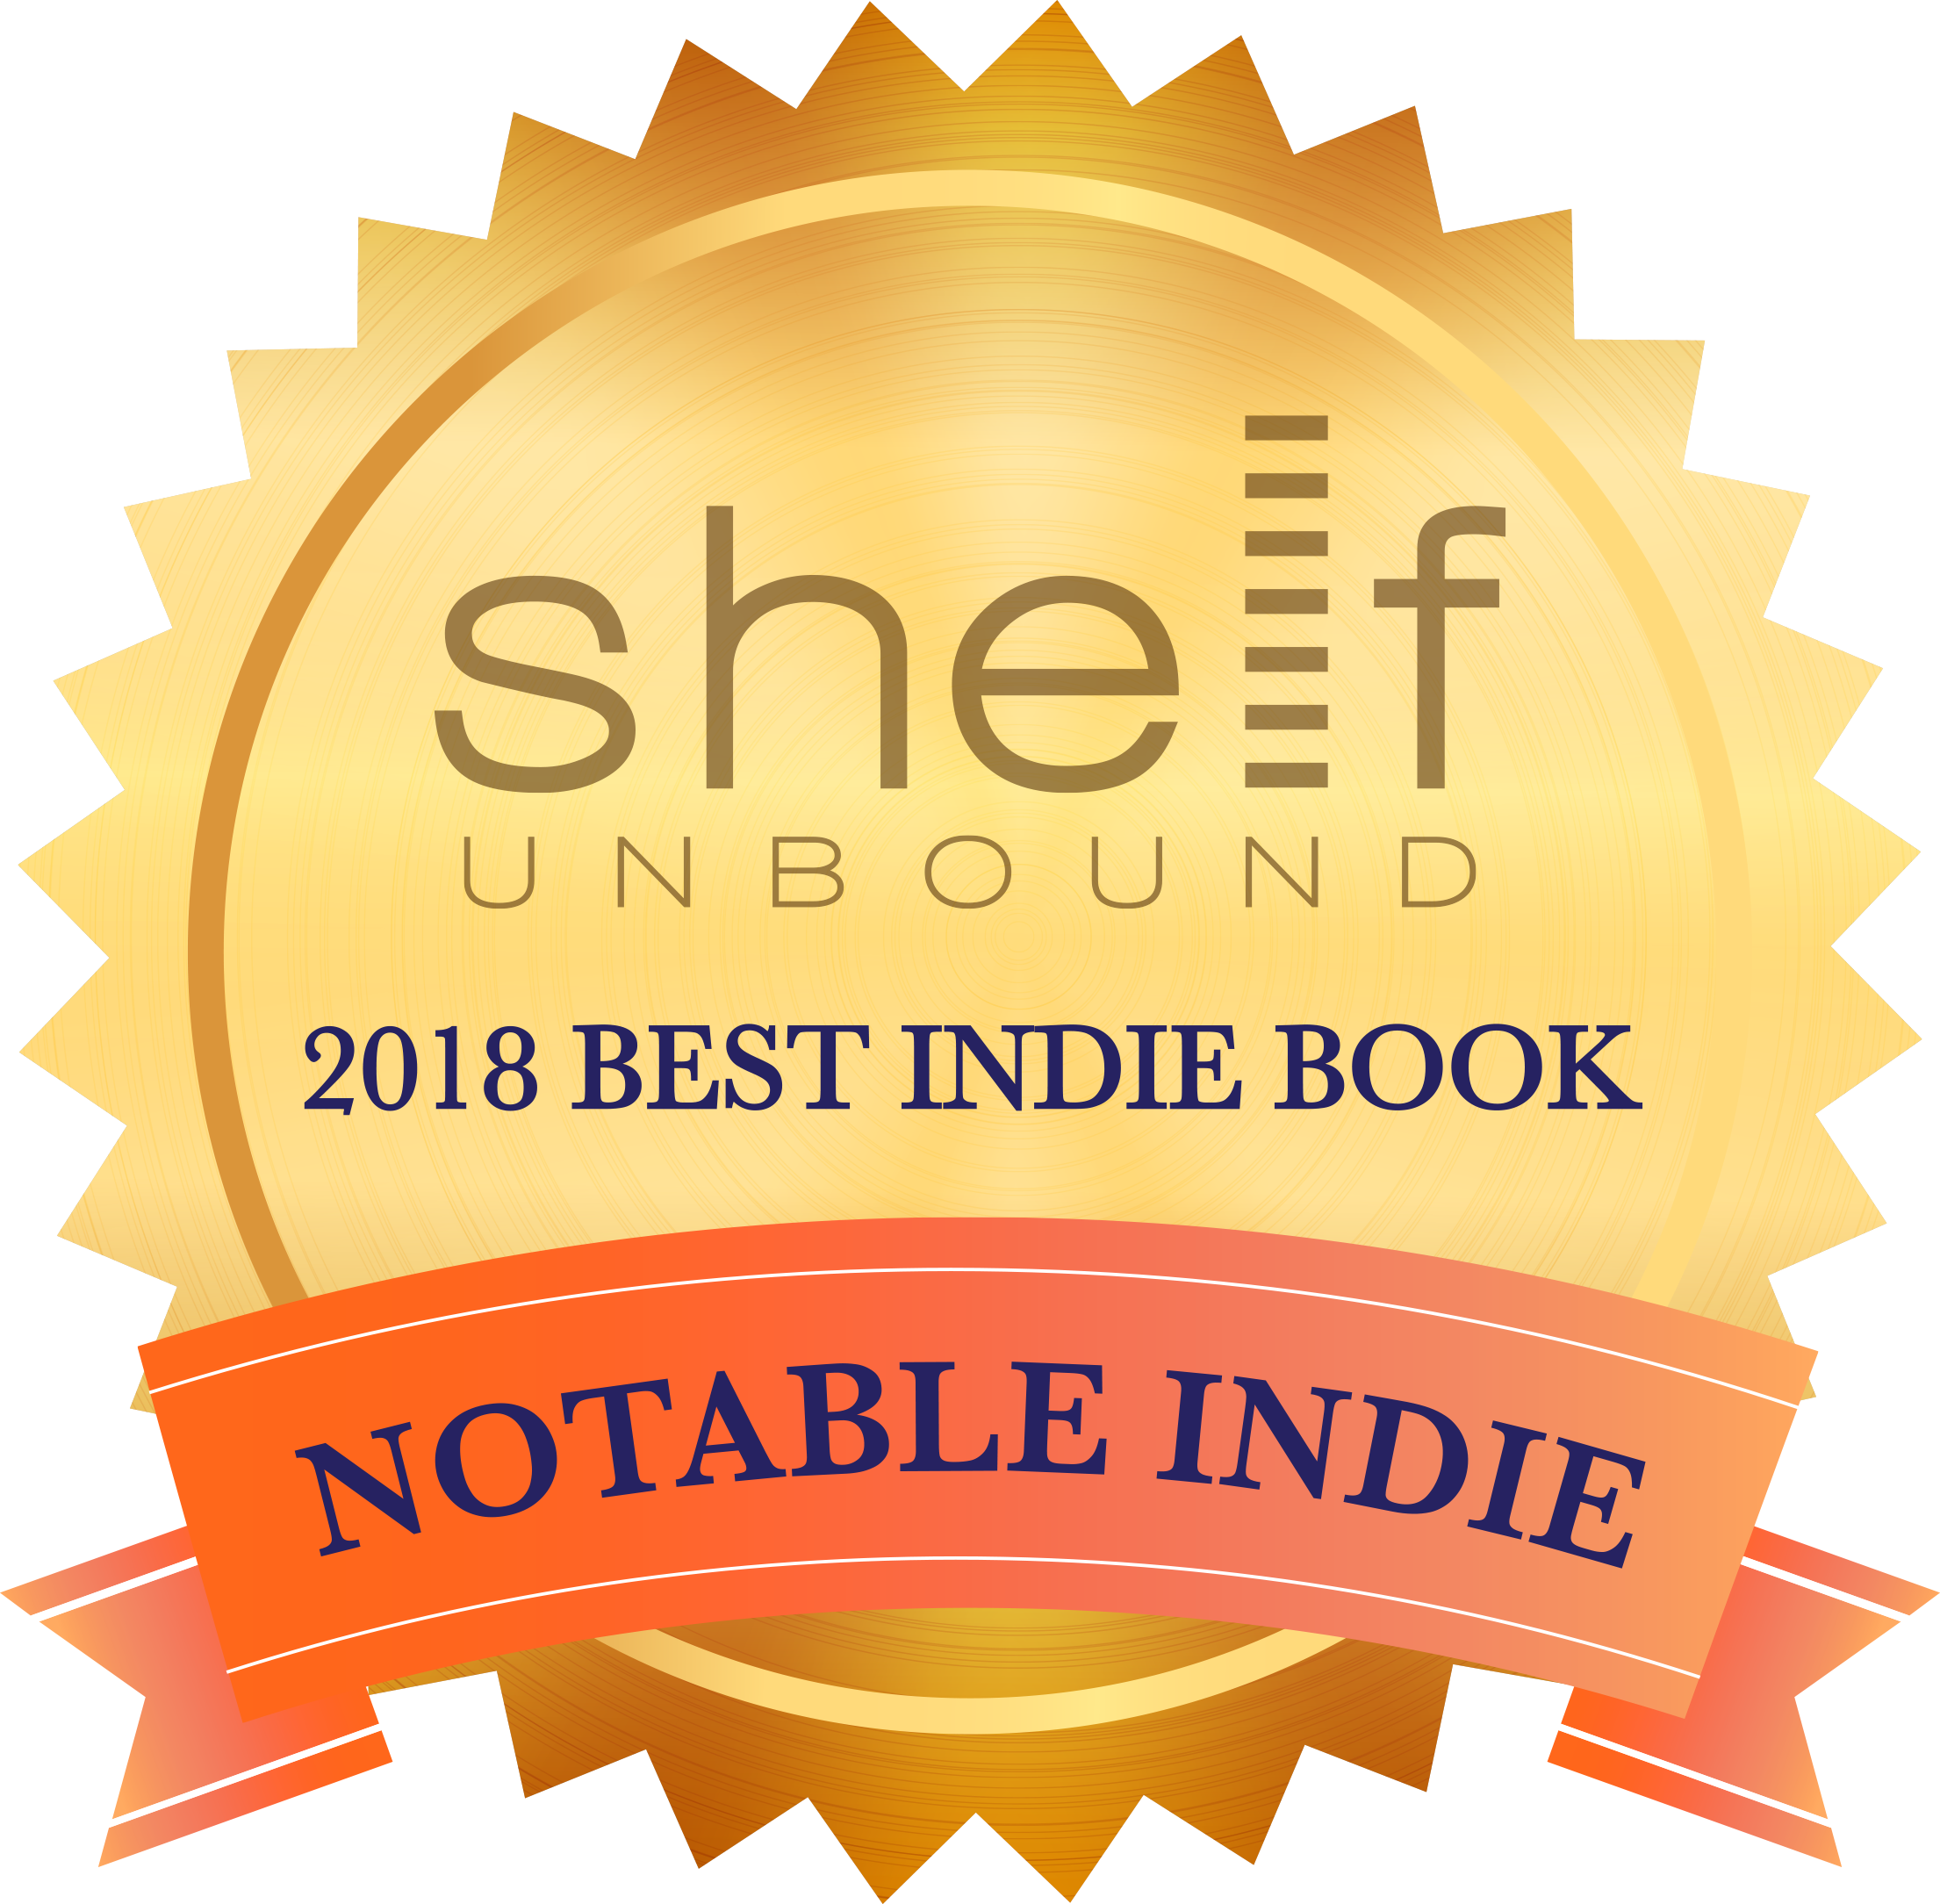 Notable Indie in Self Unbound's 2018 Best Indie Book